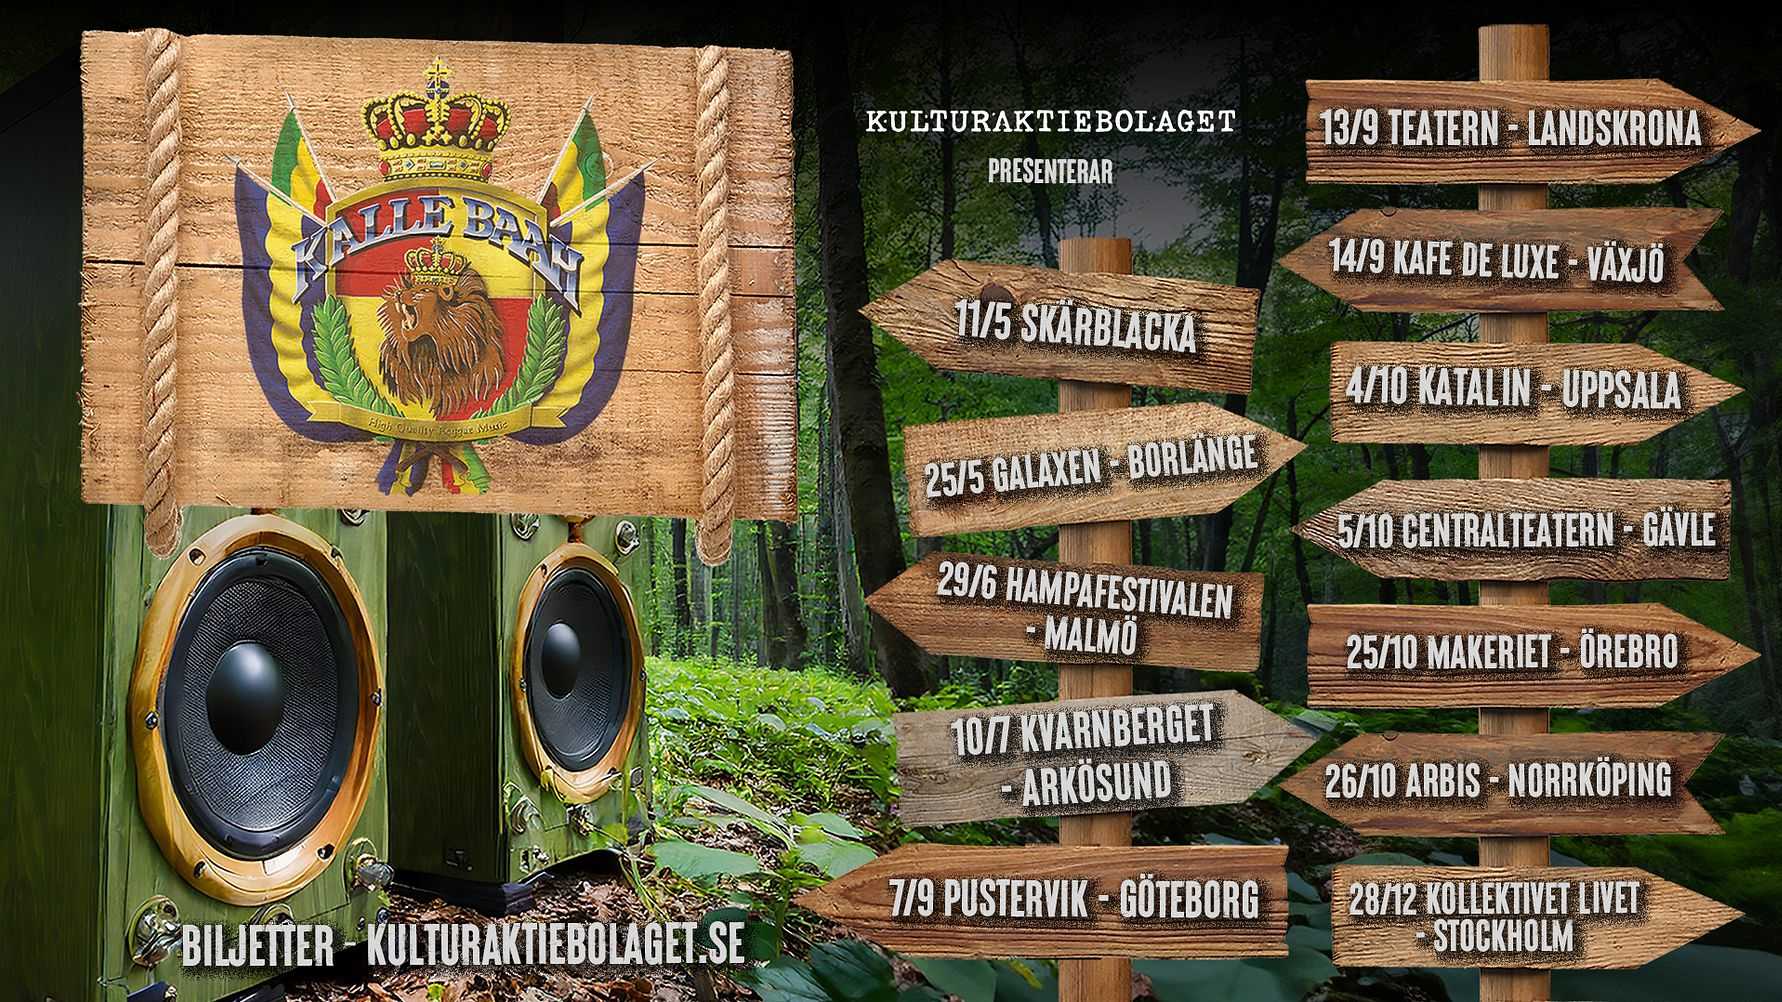 Reggaelegendarerna i Kalle Baah drar på Sverigeturné i 16 städer